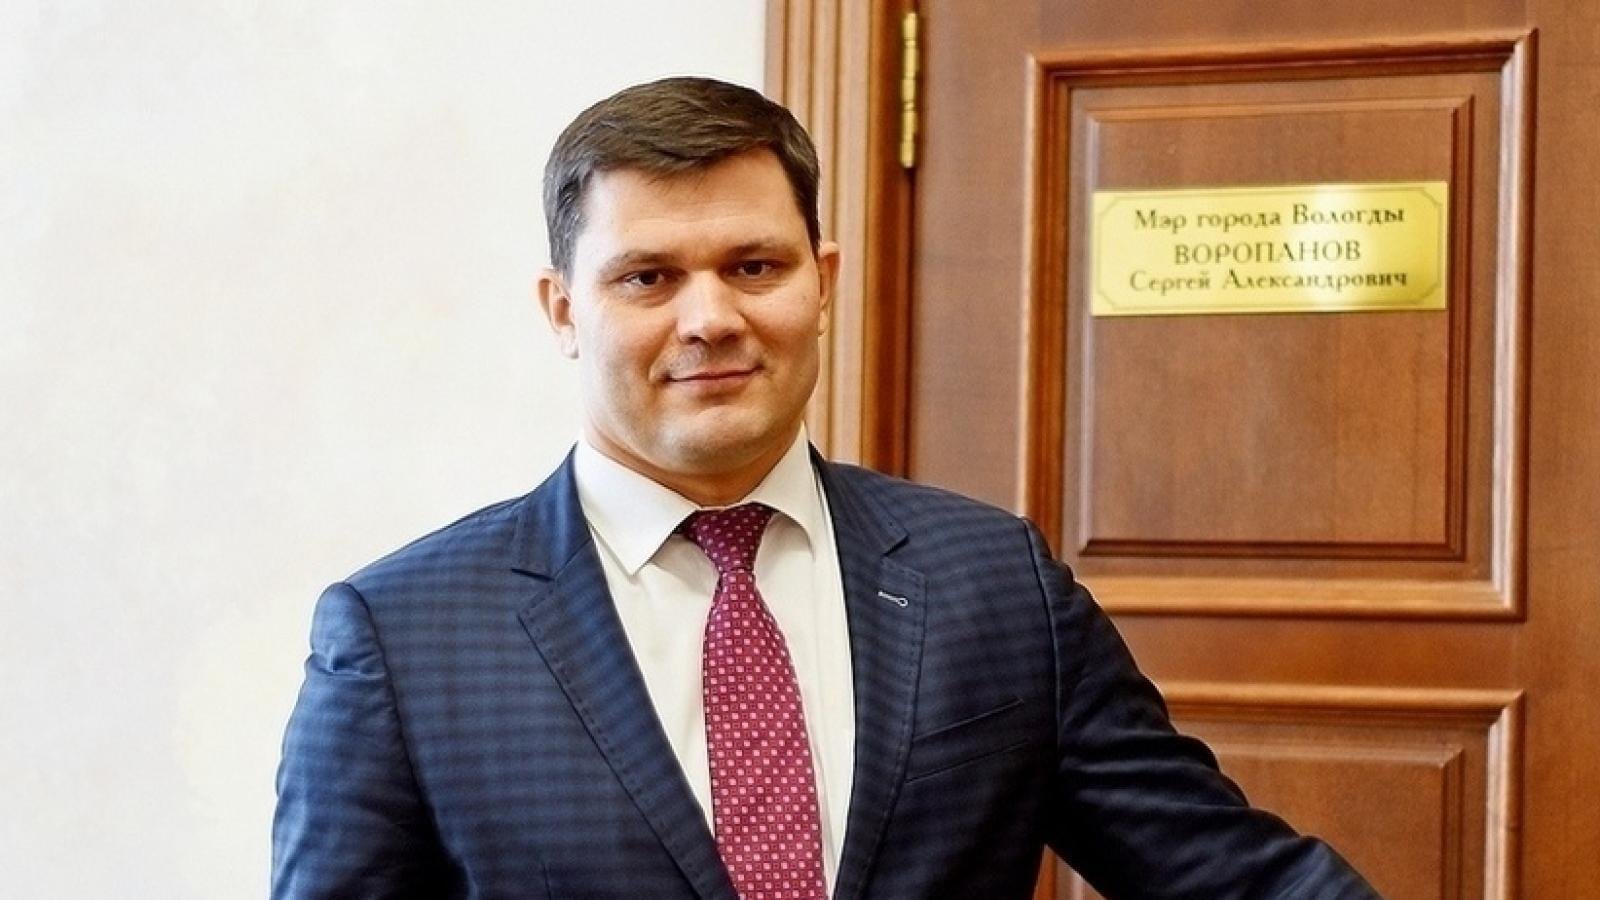 Сергей Воропанов все-таки покидает пост мэра Вологды?